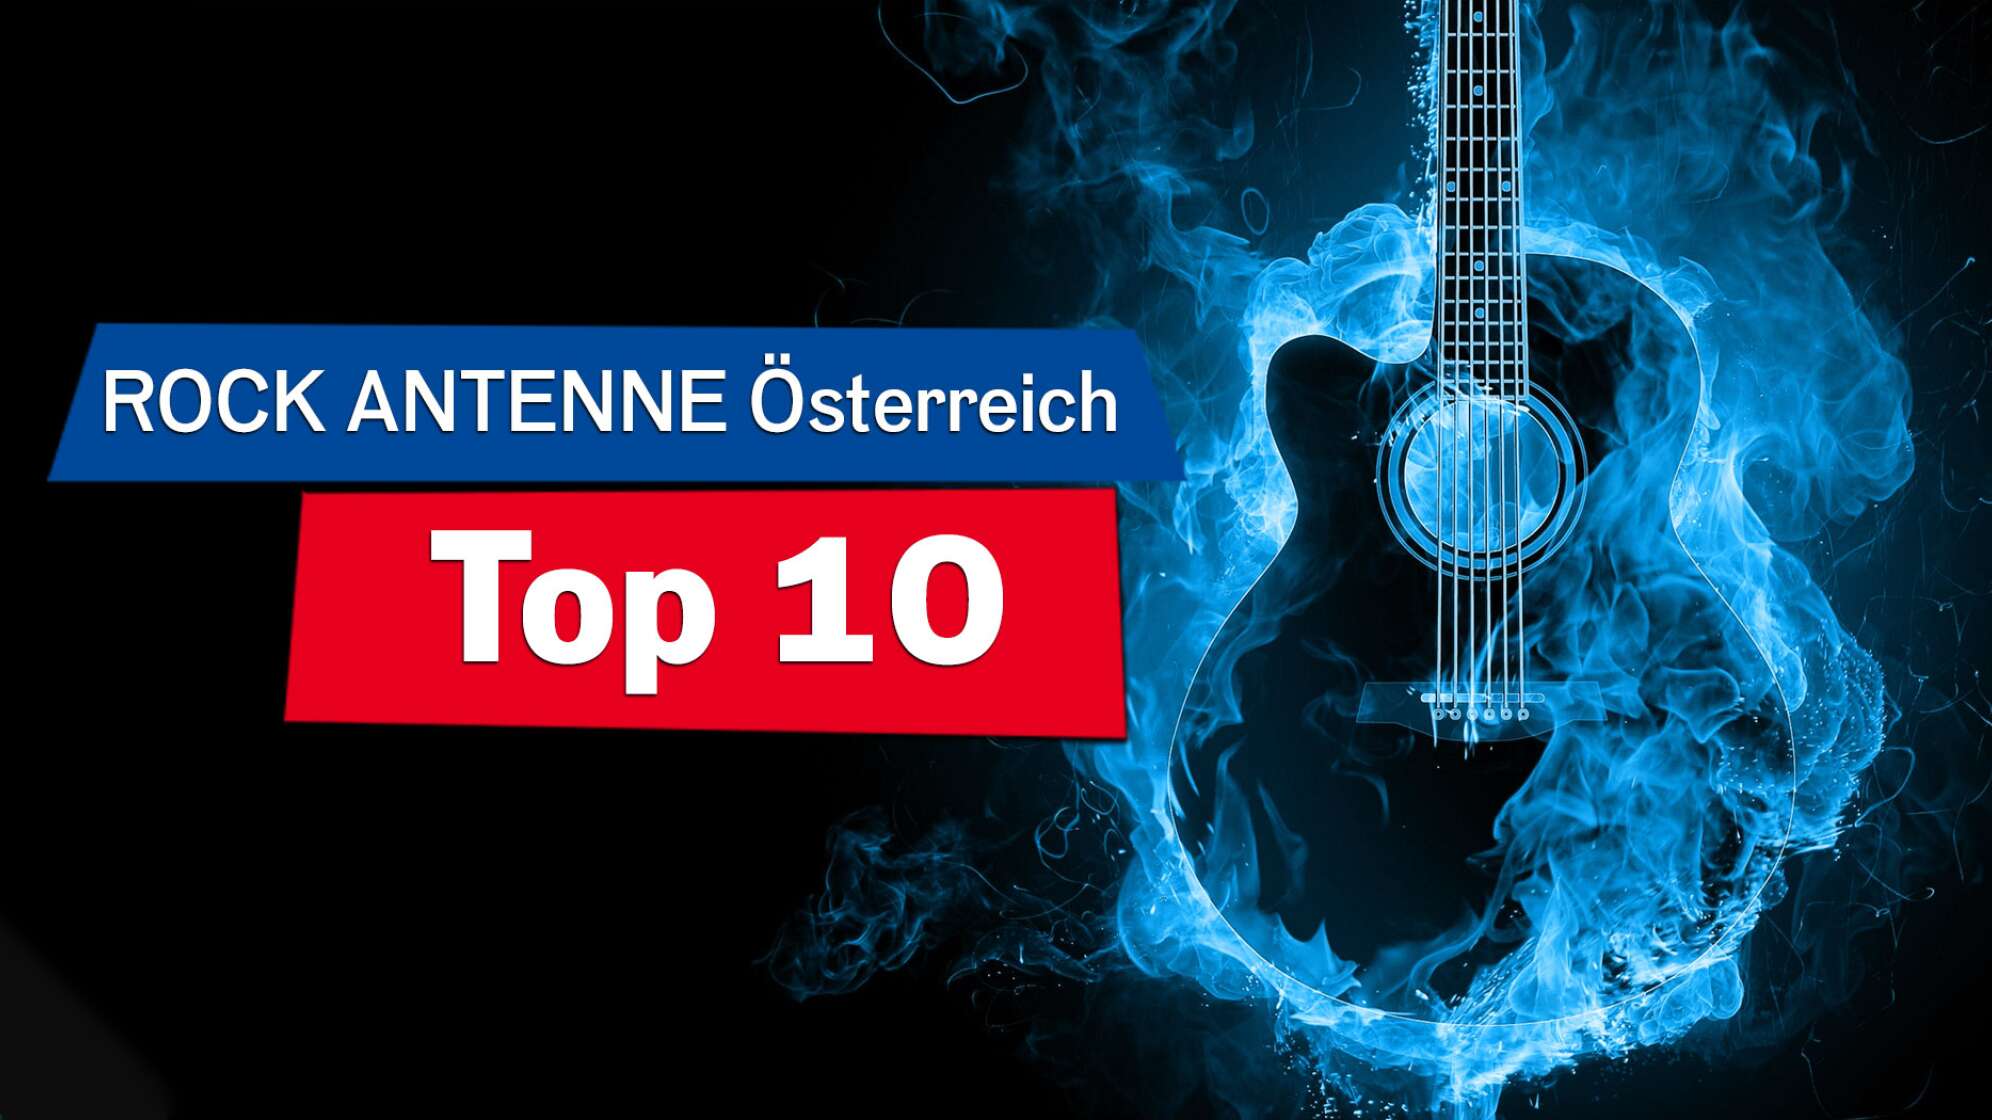 Eine Silhouette einer Gitarre umgeben von blauen Flammen, Bildaufschrift: Die ROCK ANTENNE Österreich Top 10"